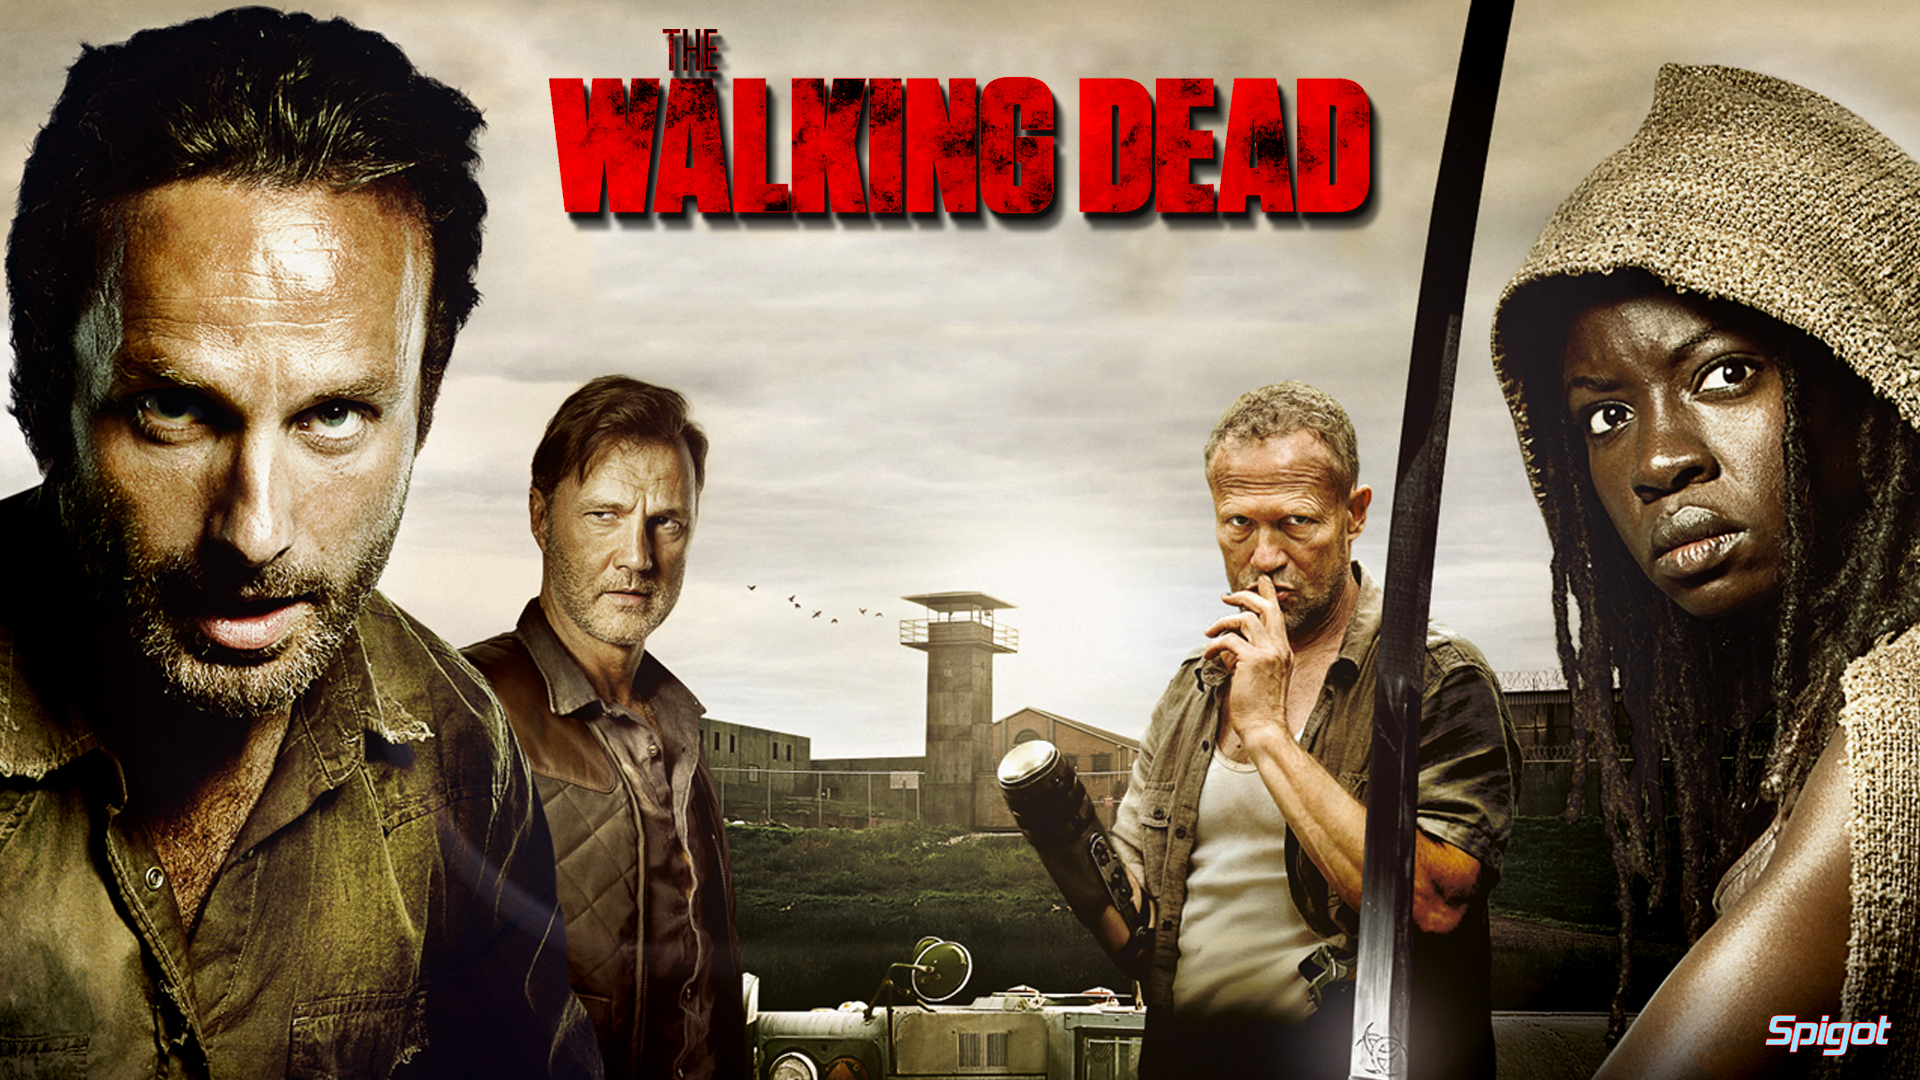 The Walking Dead Wallpaper HD 1080pjpg